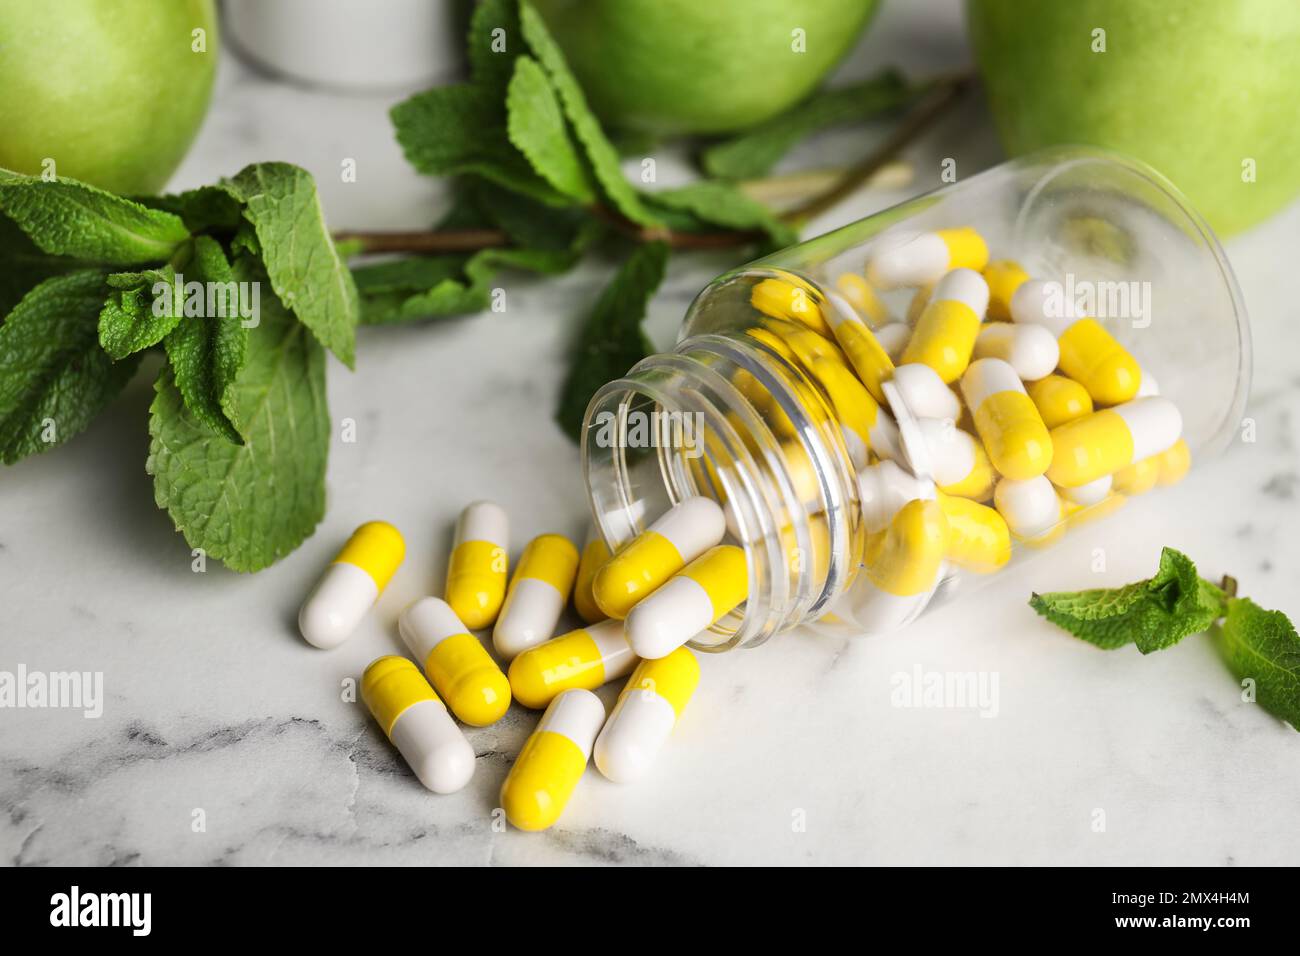 Bouteille avec des pilules de vitamines, des pommes et de la menthe sur une table en marbre blanc Banque D'Images